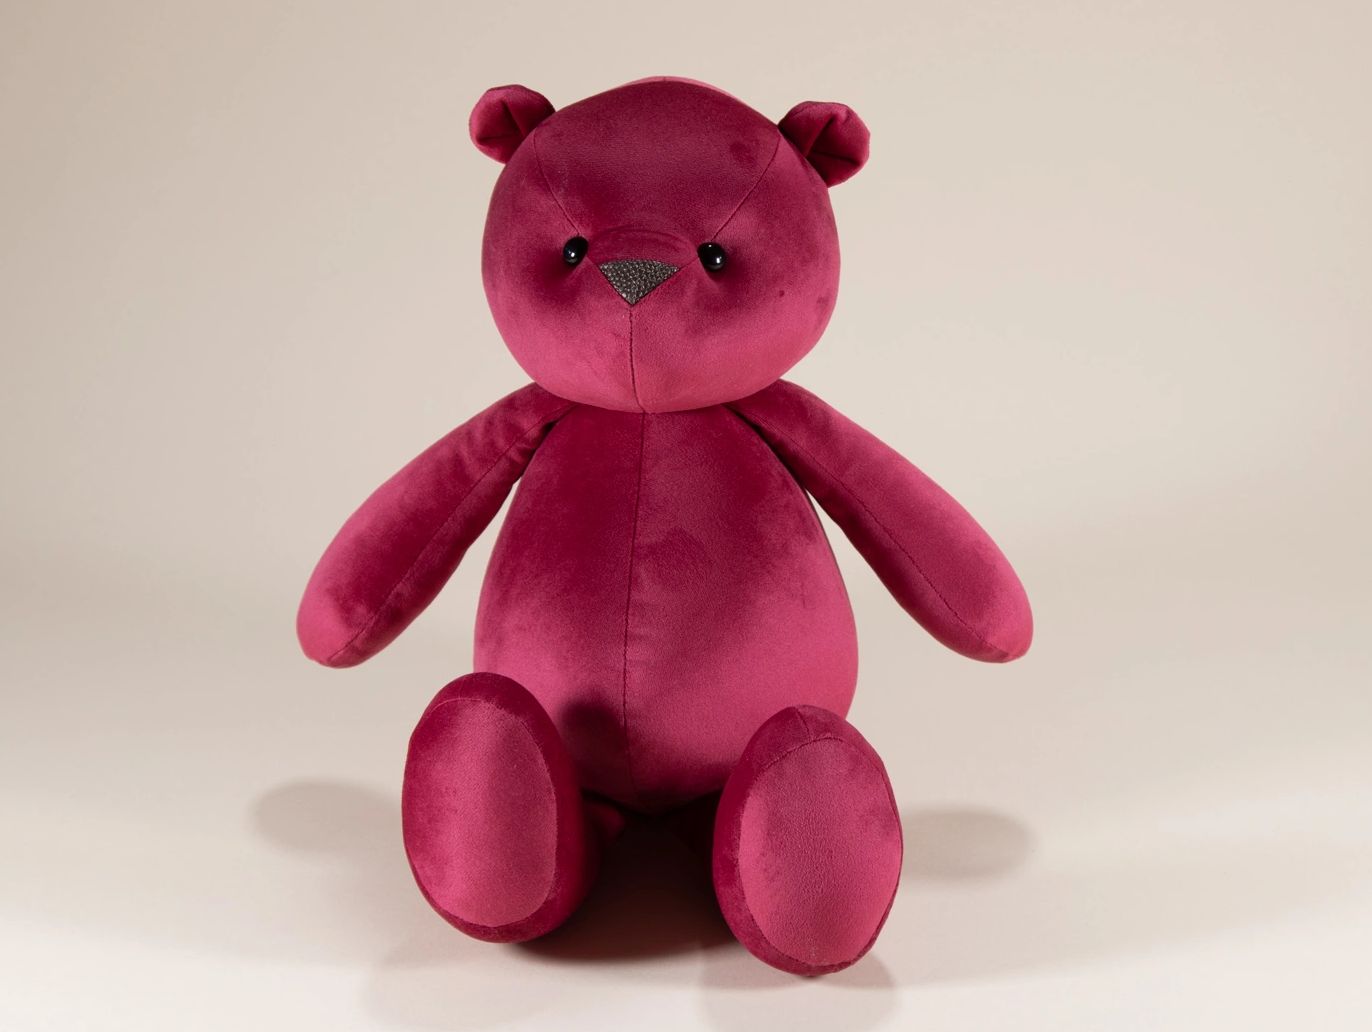 Bright pink teddy bear